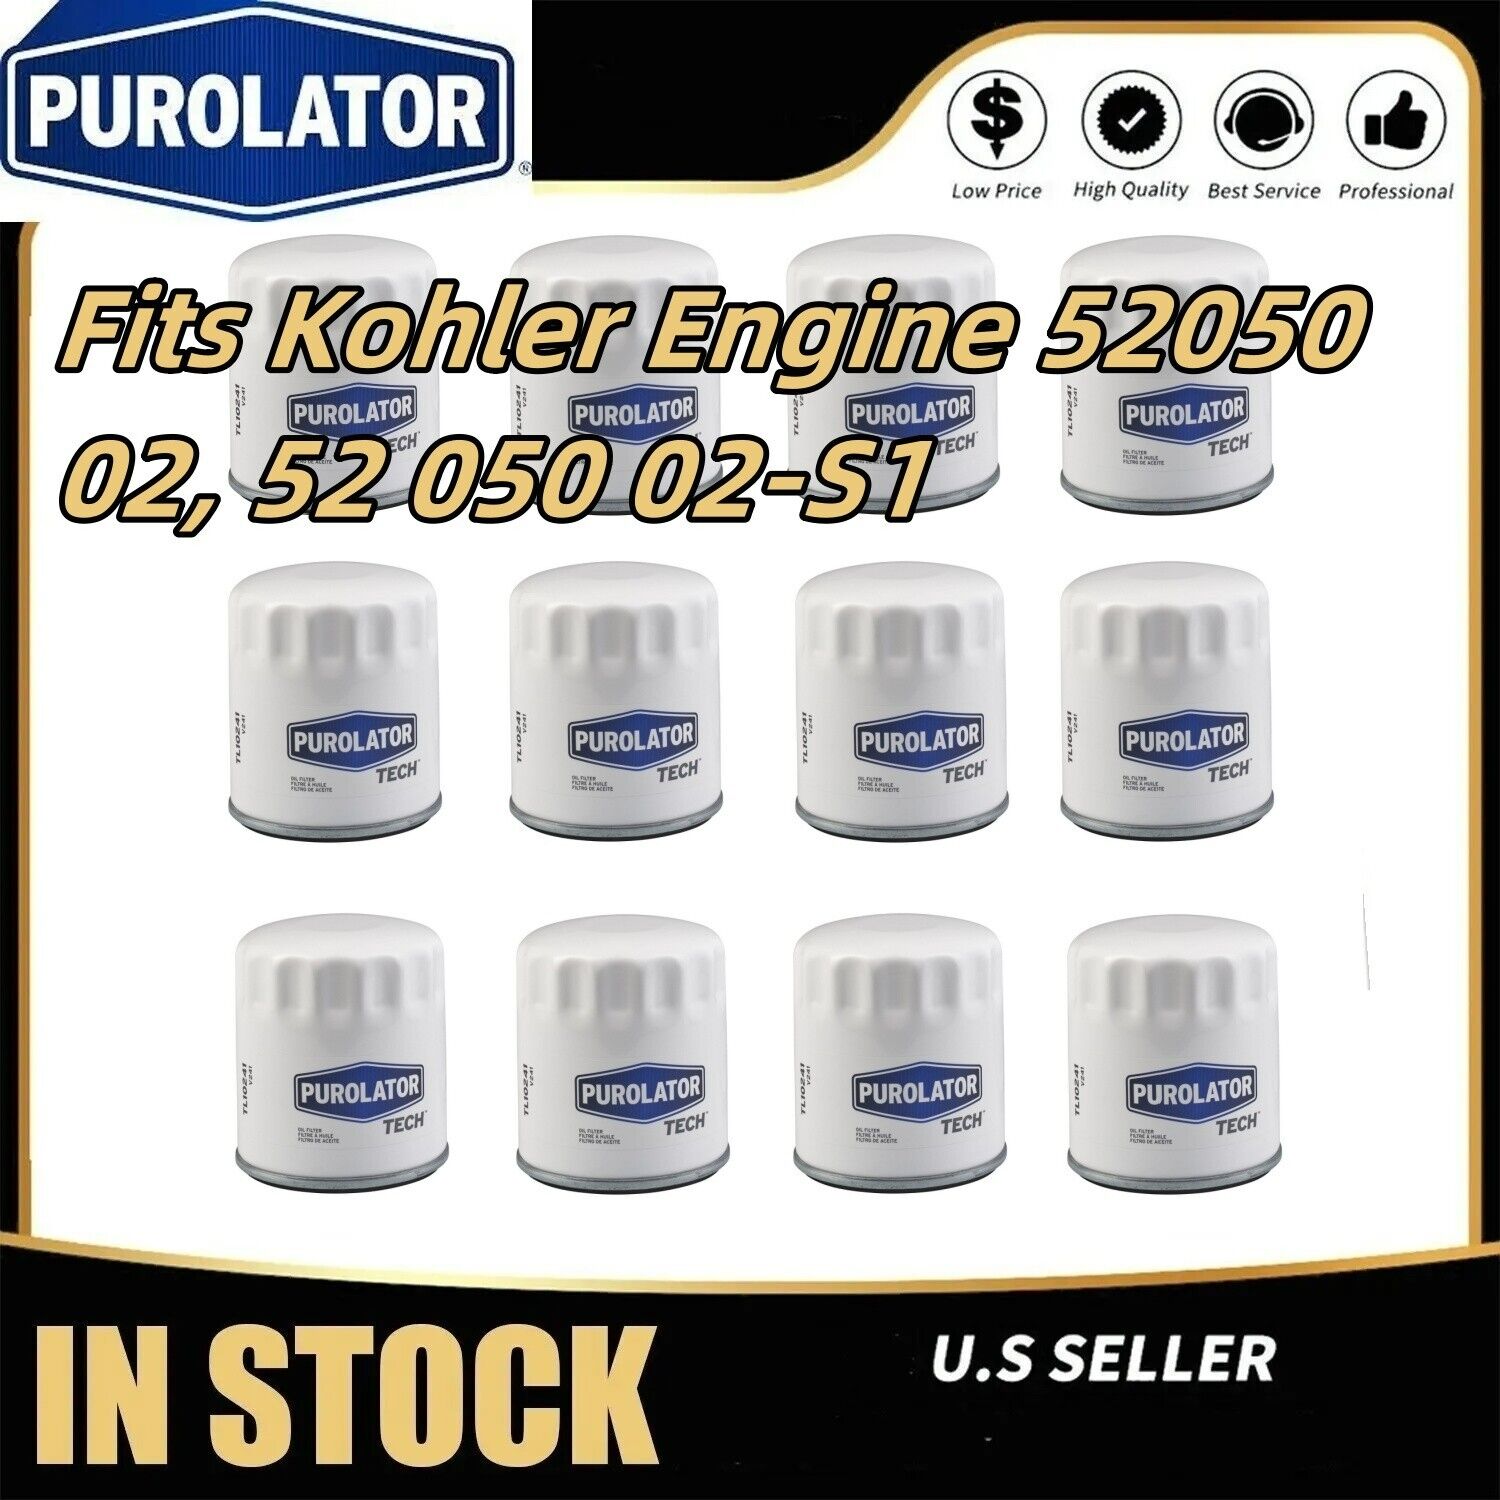 12PK Oil Filter Fits Kohler Engine 5205002, 52 050 02-S1